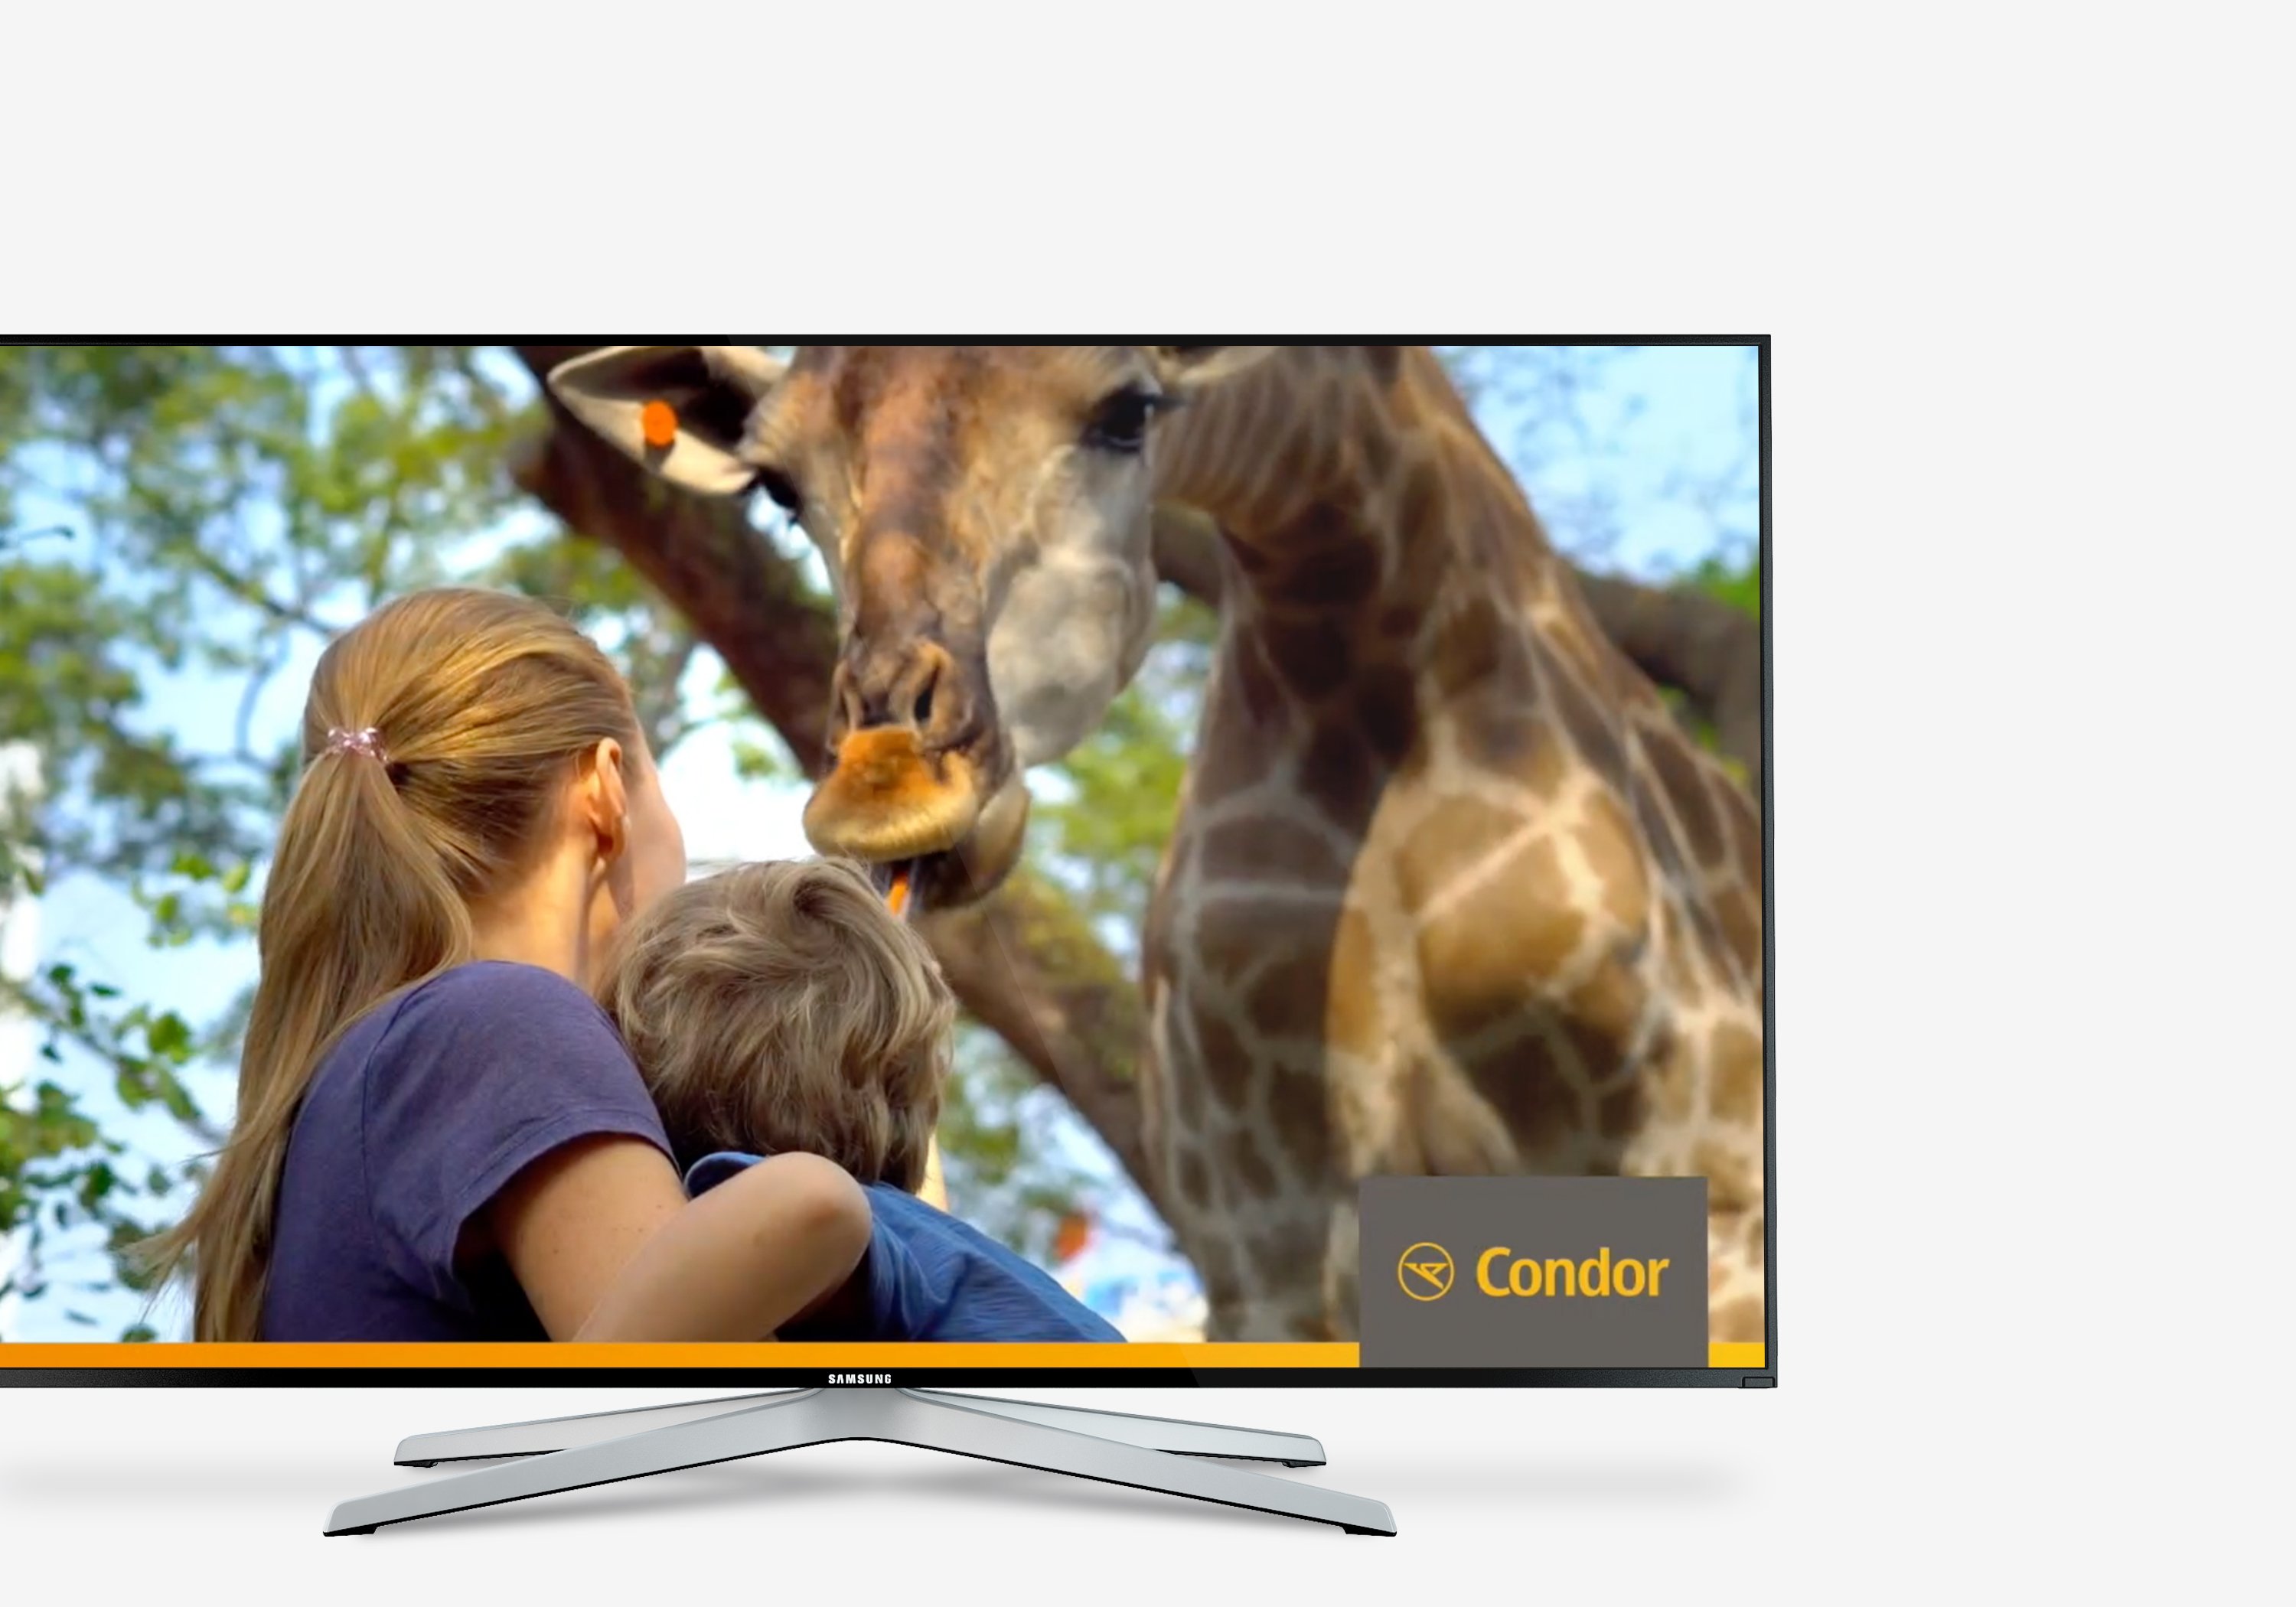 Excite Werbeagentur Frankfurt Condor Anzeige Kinder mit Giraffe